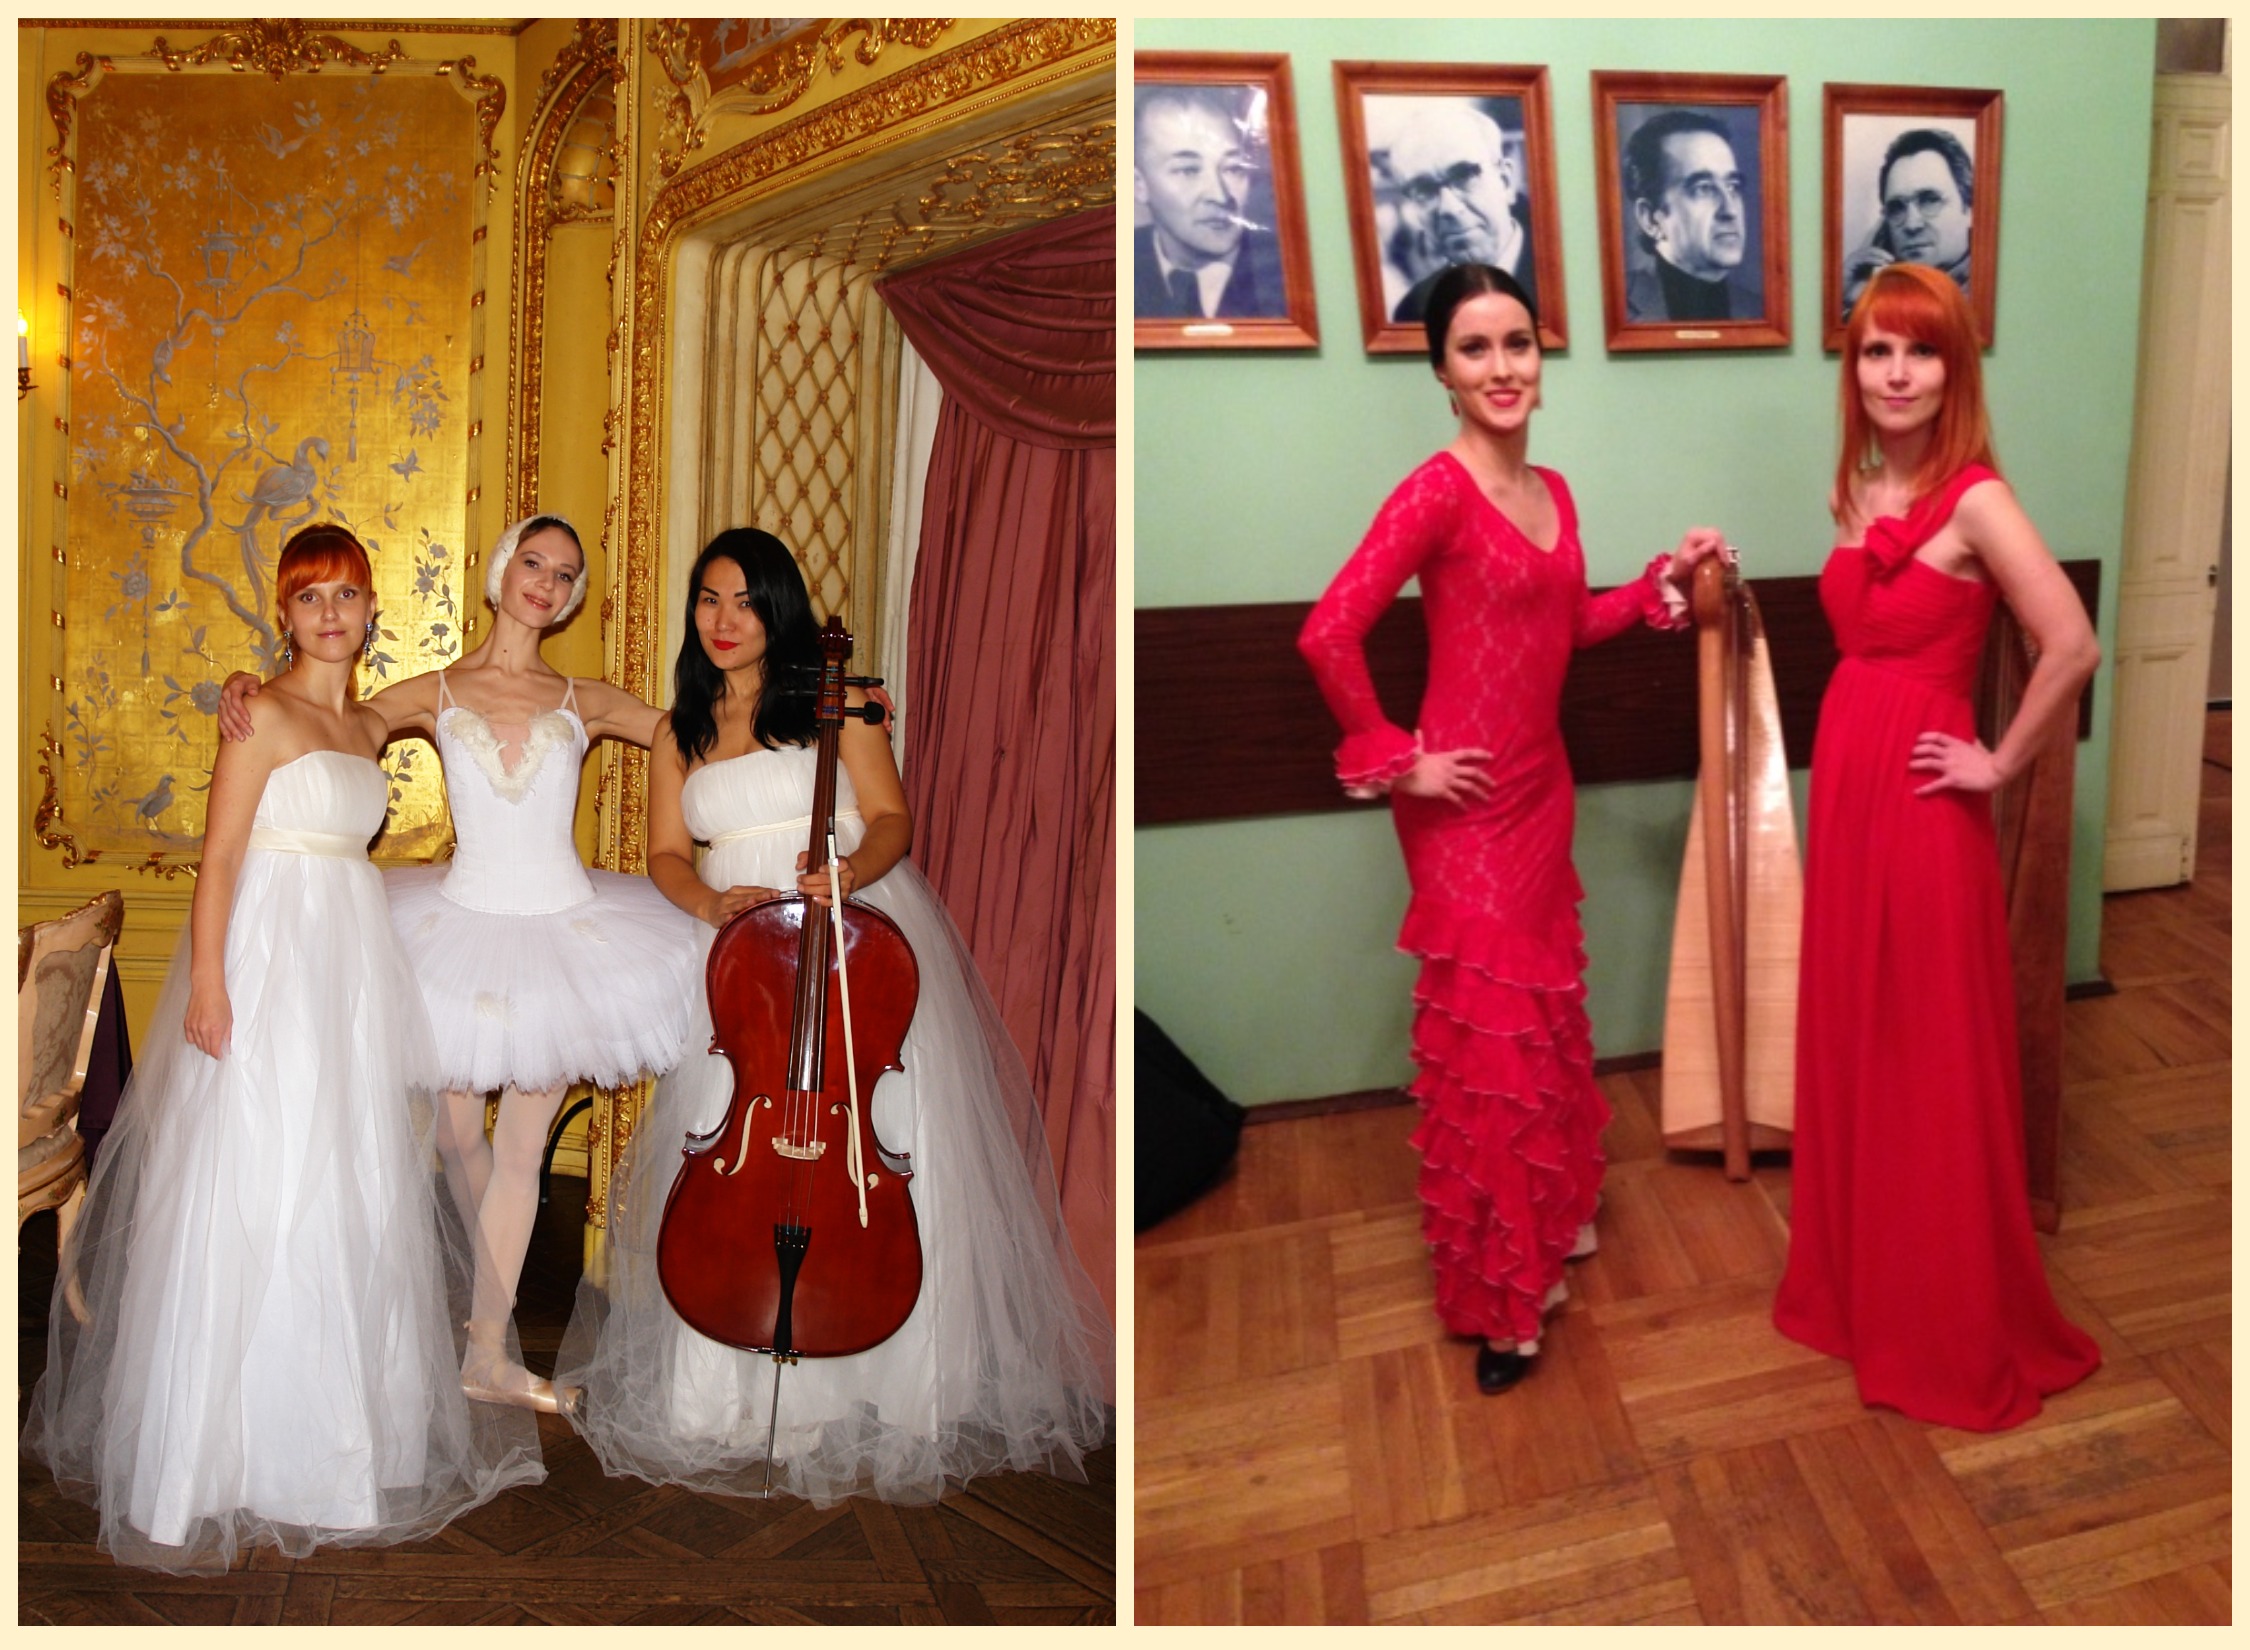 Танцы "Лебедь" и фламенко под сопровождение арфы и виолончели.